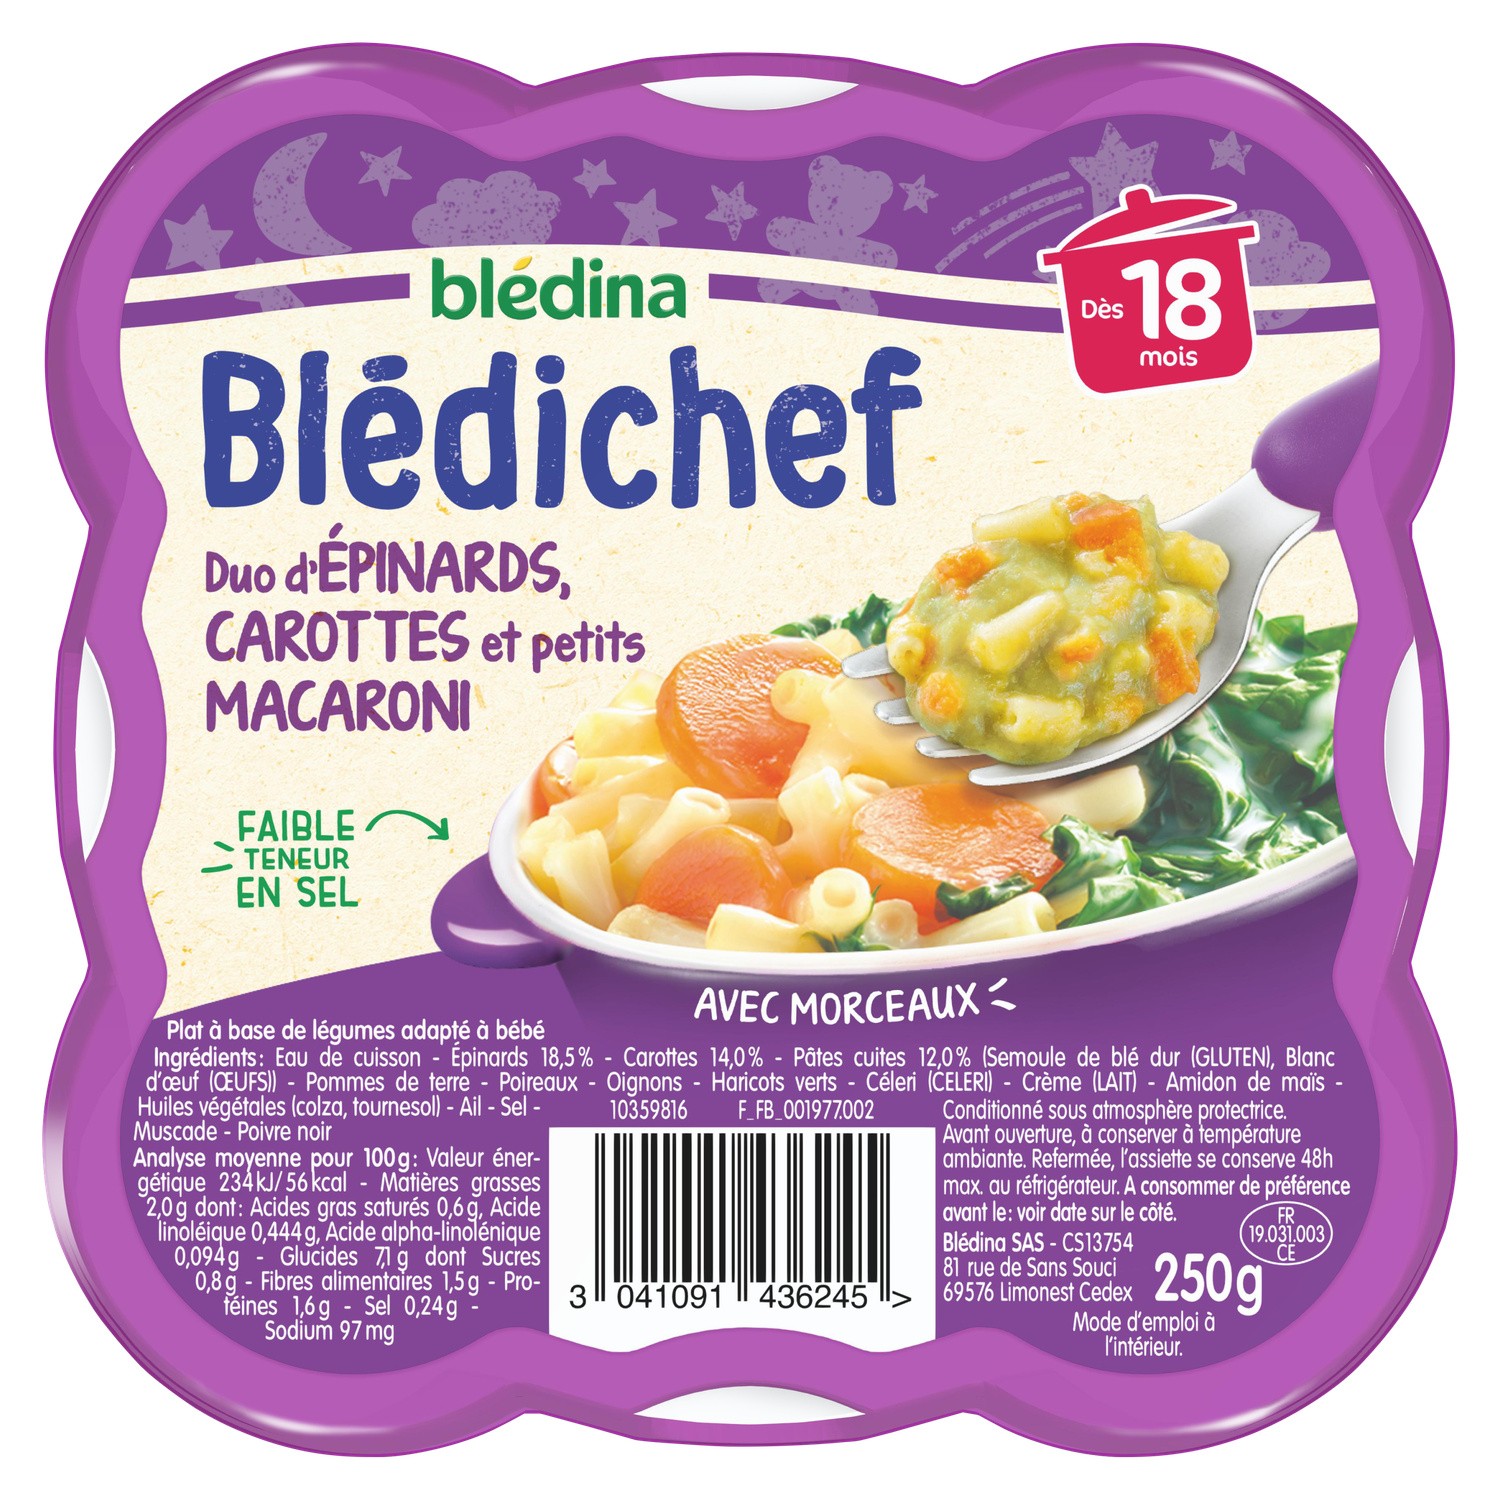 Blédichef Duo d'épinards, carottes et petits macaroni